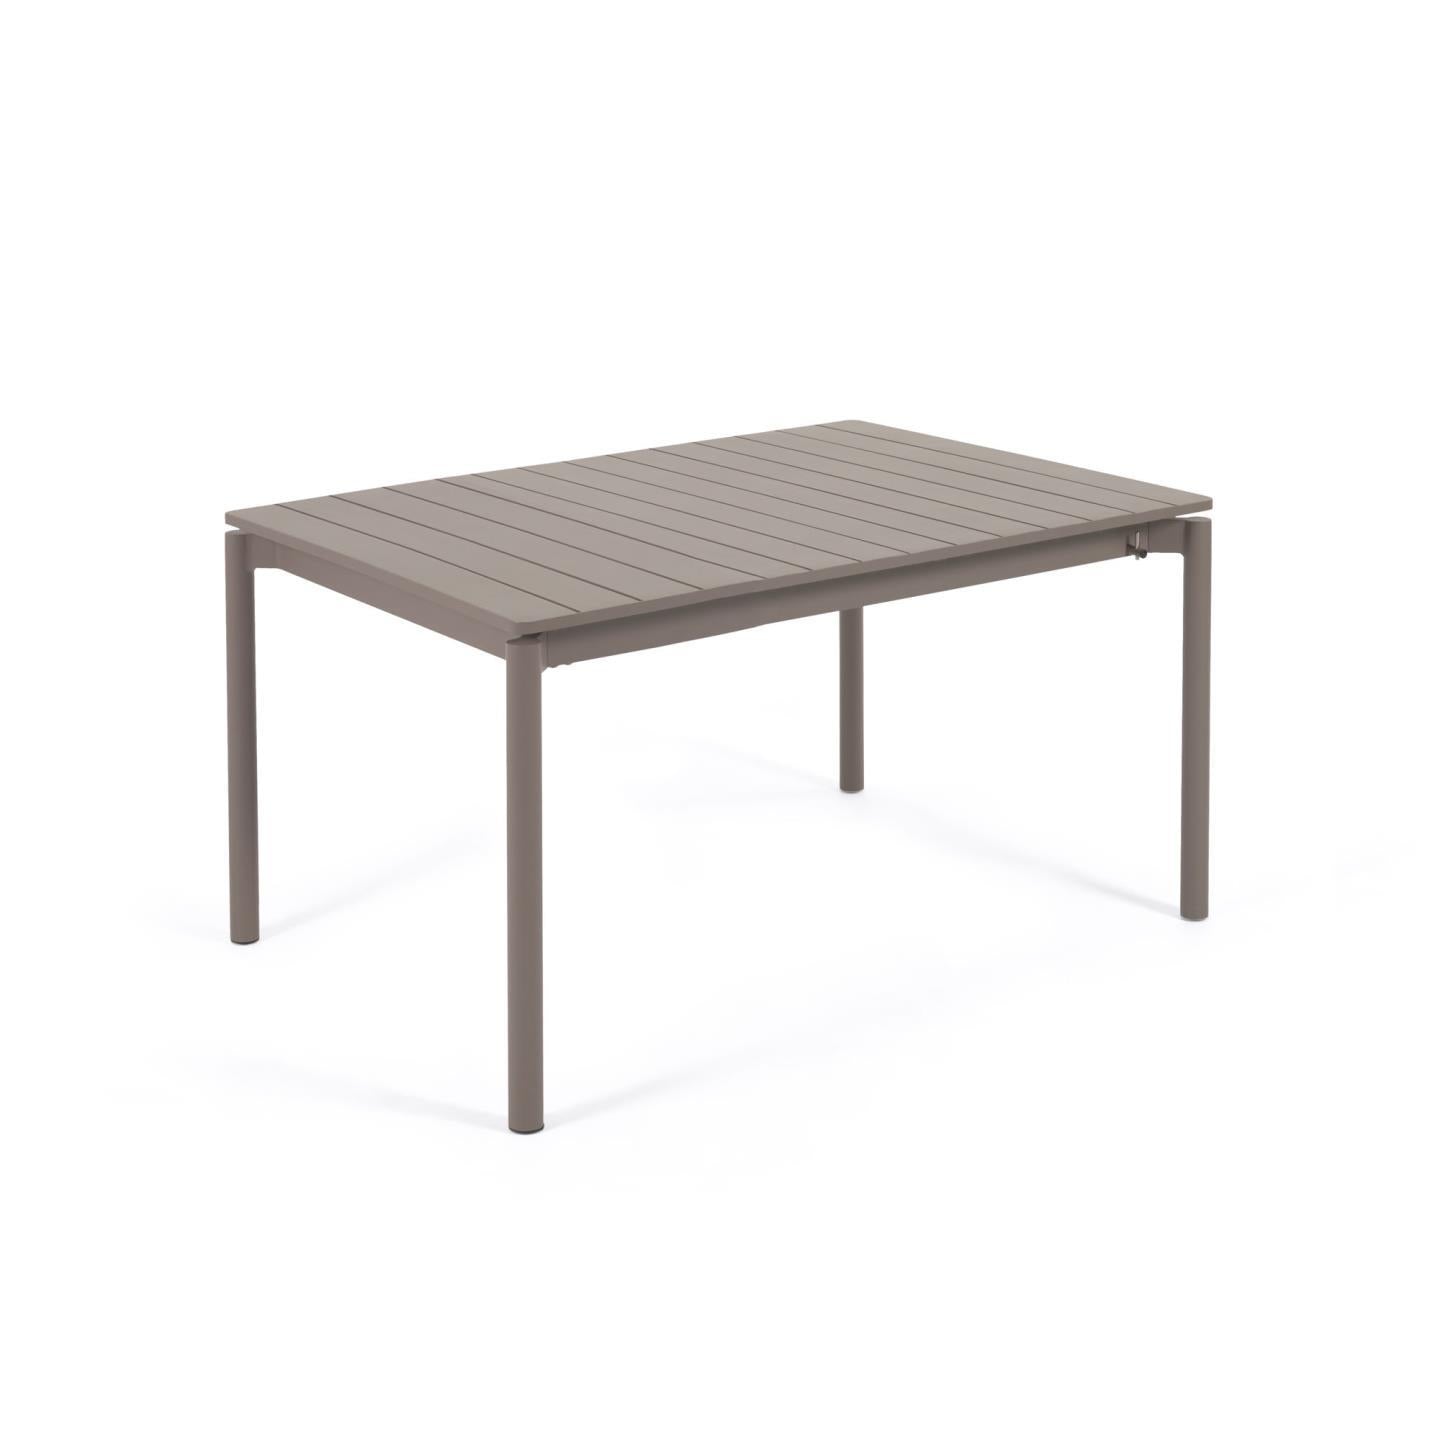 Zaltana kihúzható alumínium kültéri asztal, matt barna kivitelben 140 (200) x 90 cm